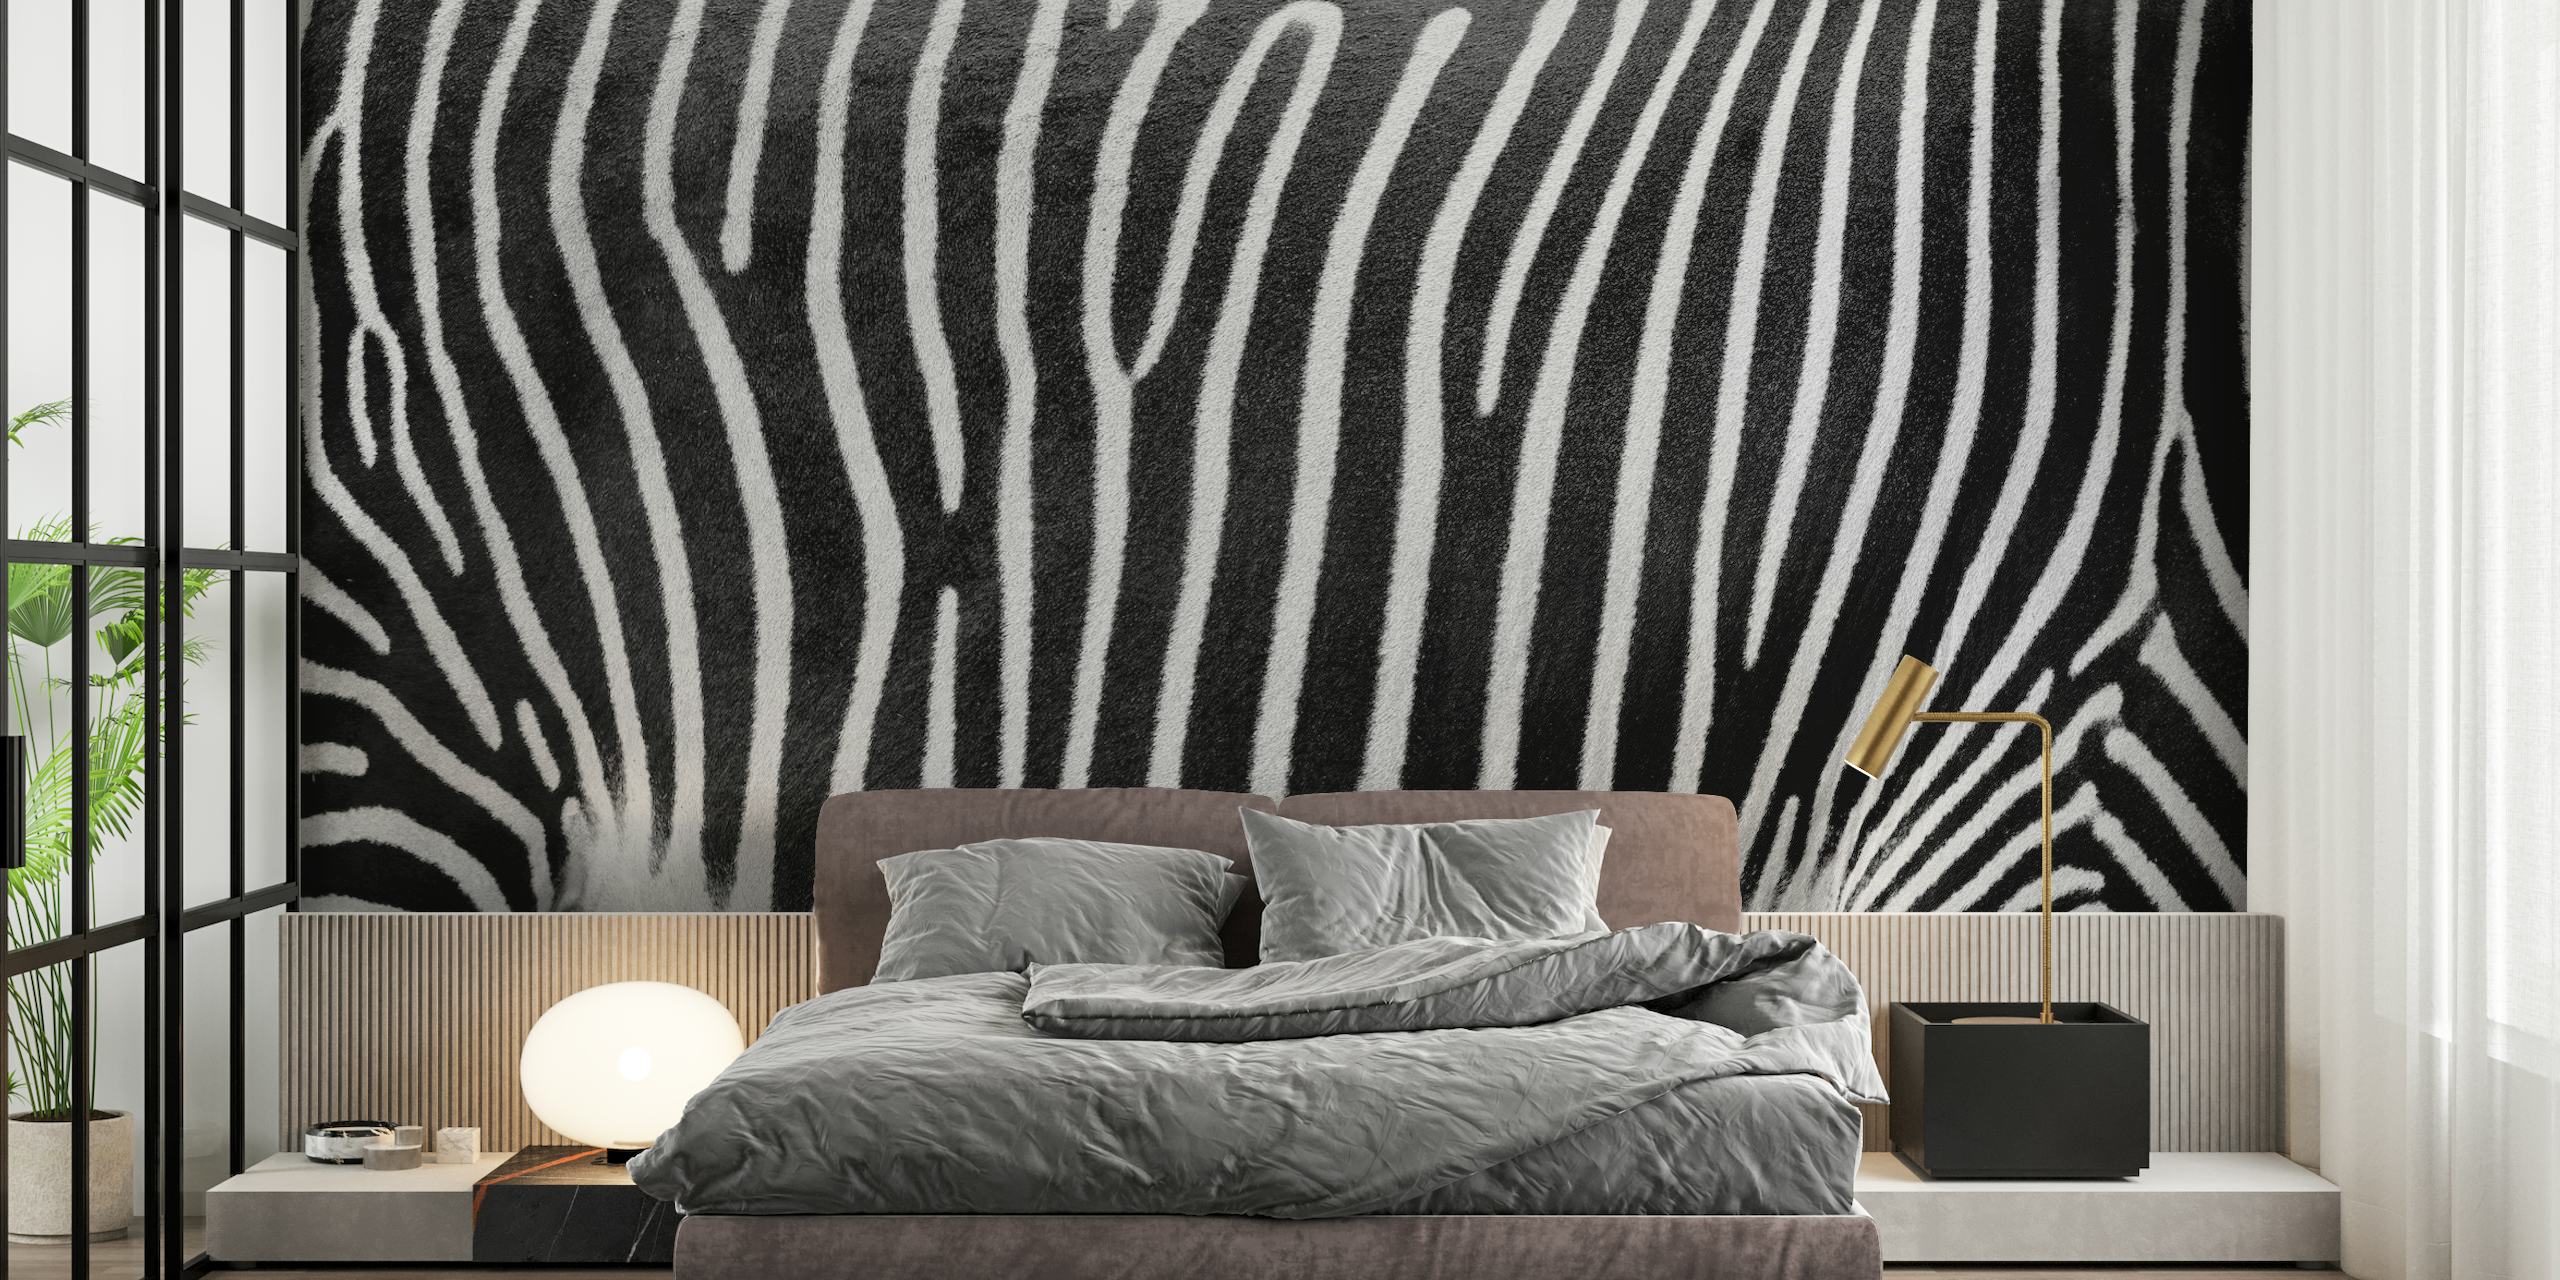 Muurschildering met zebrastreeppatroon voor een modern interieur